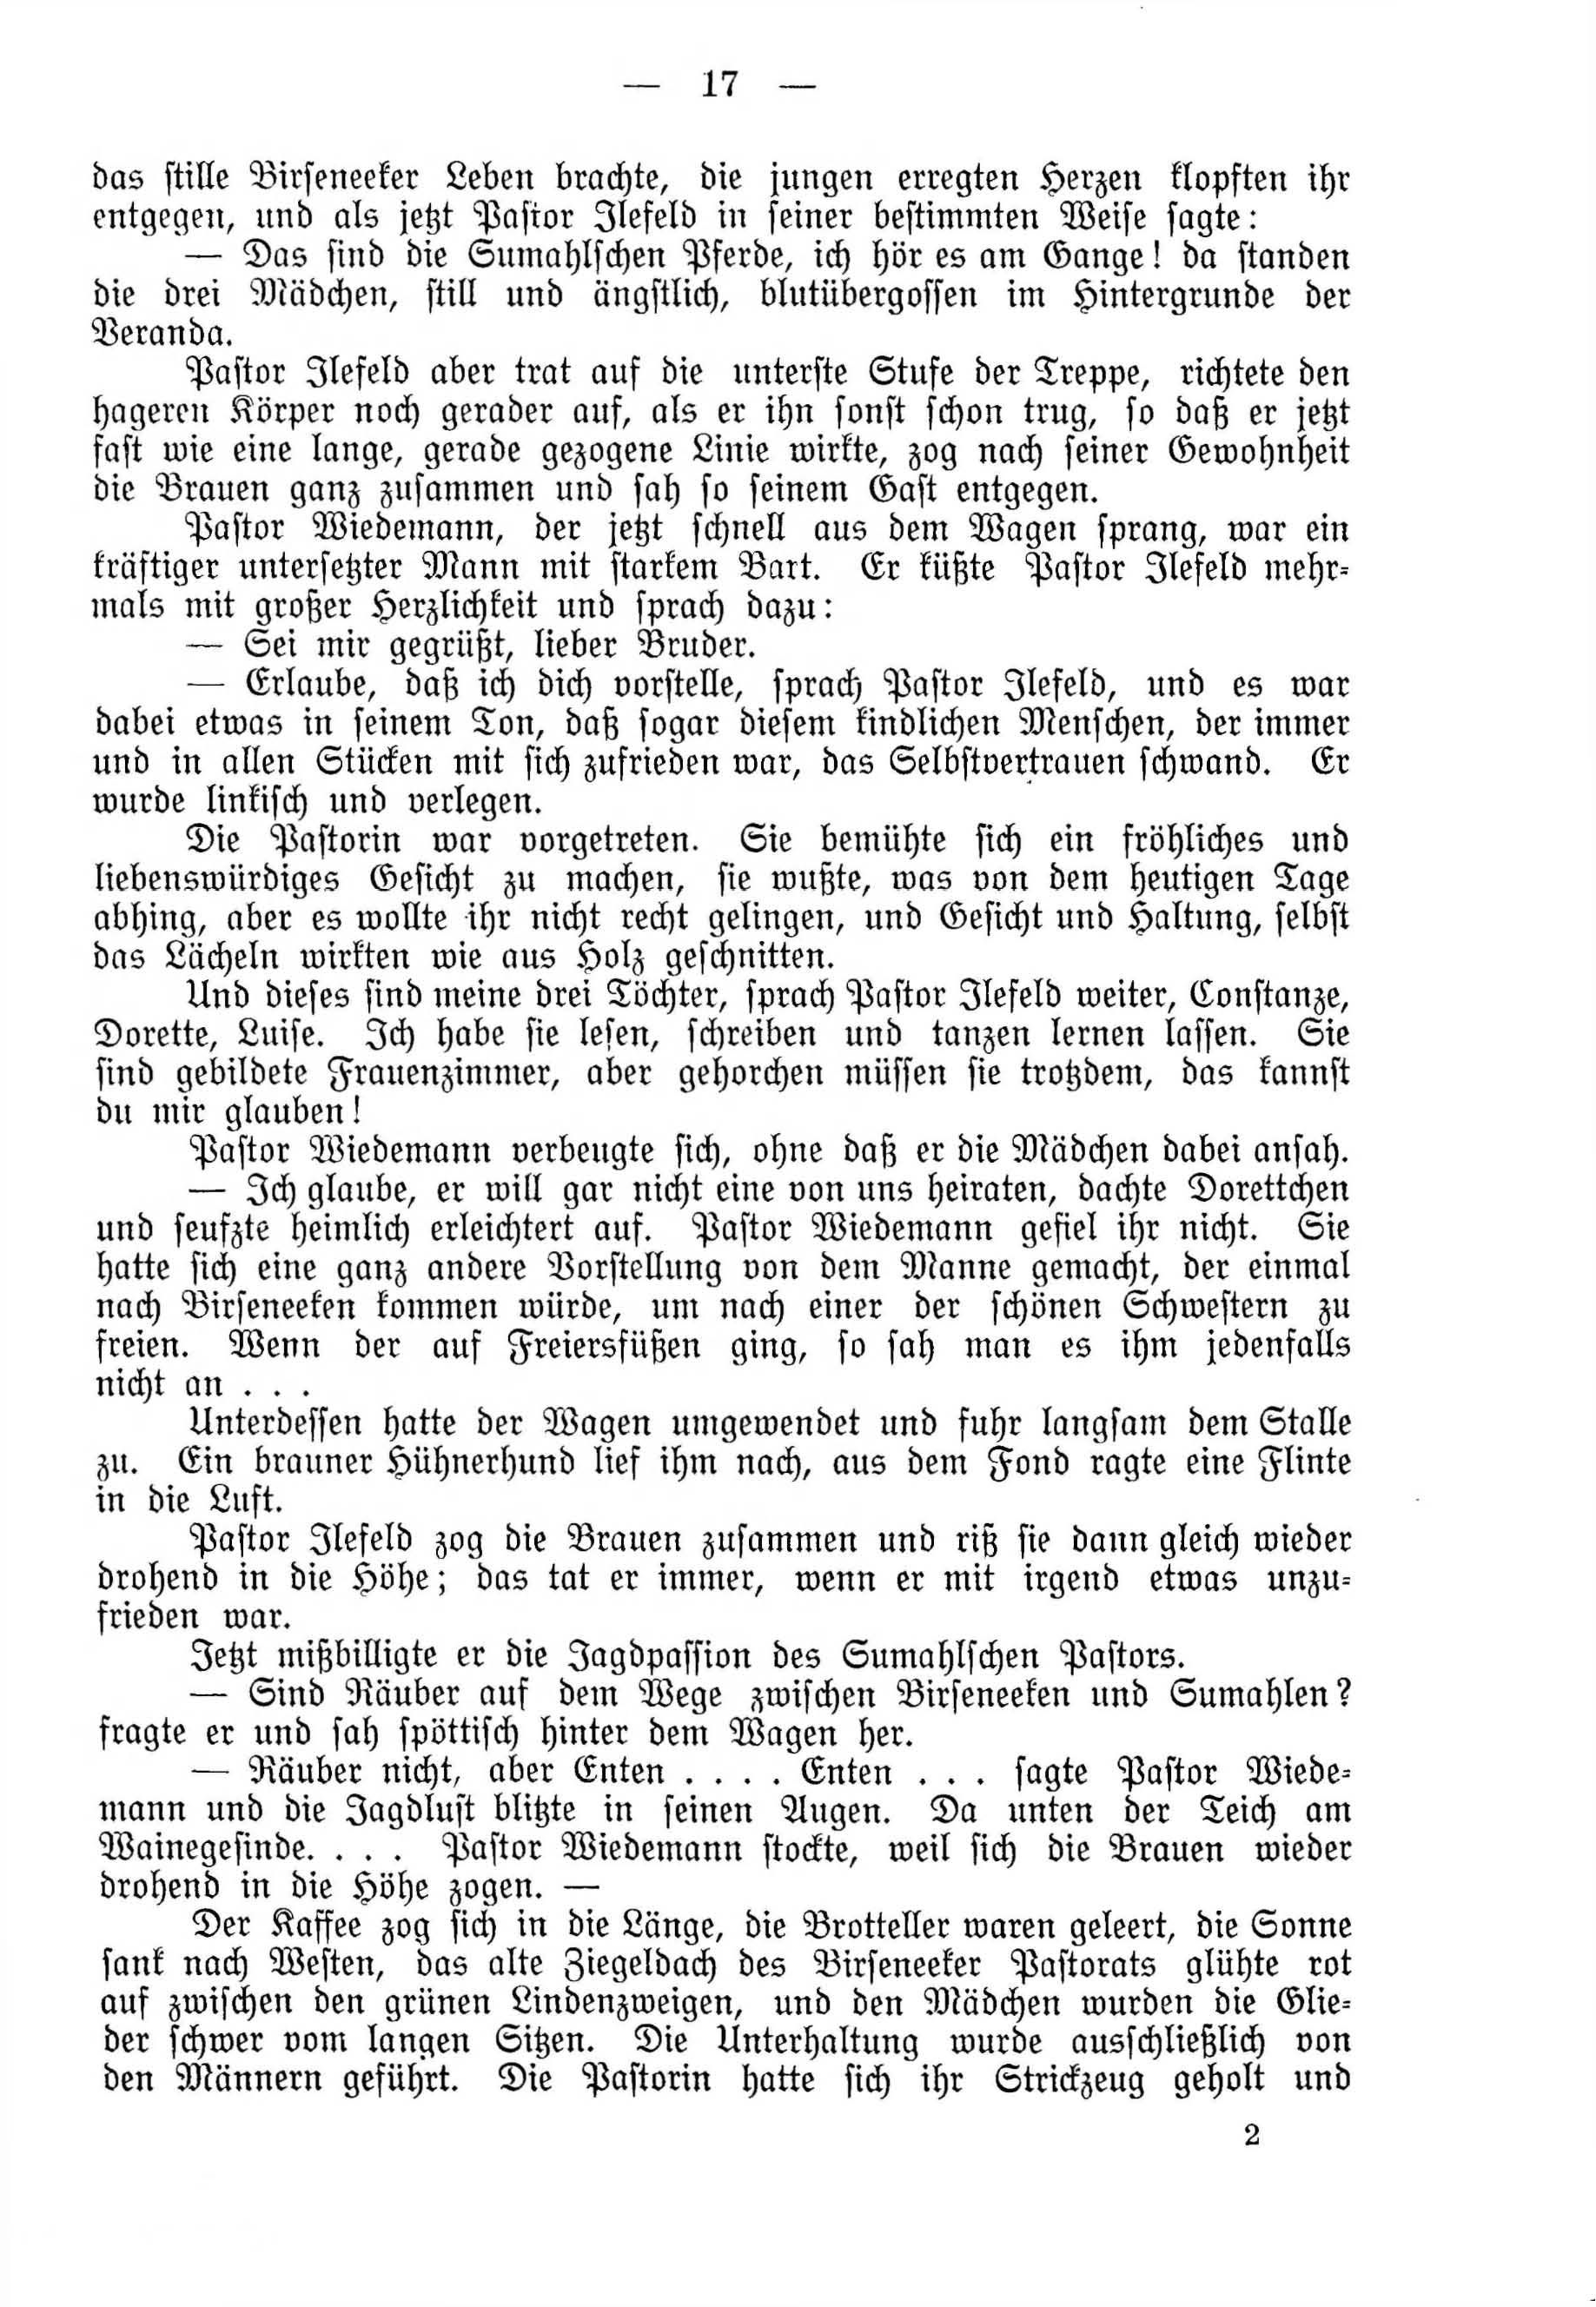 Deutsche Monatsschrift für Russland [4] (1915) | 17. (17) Haupttext